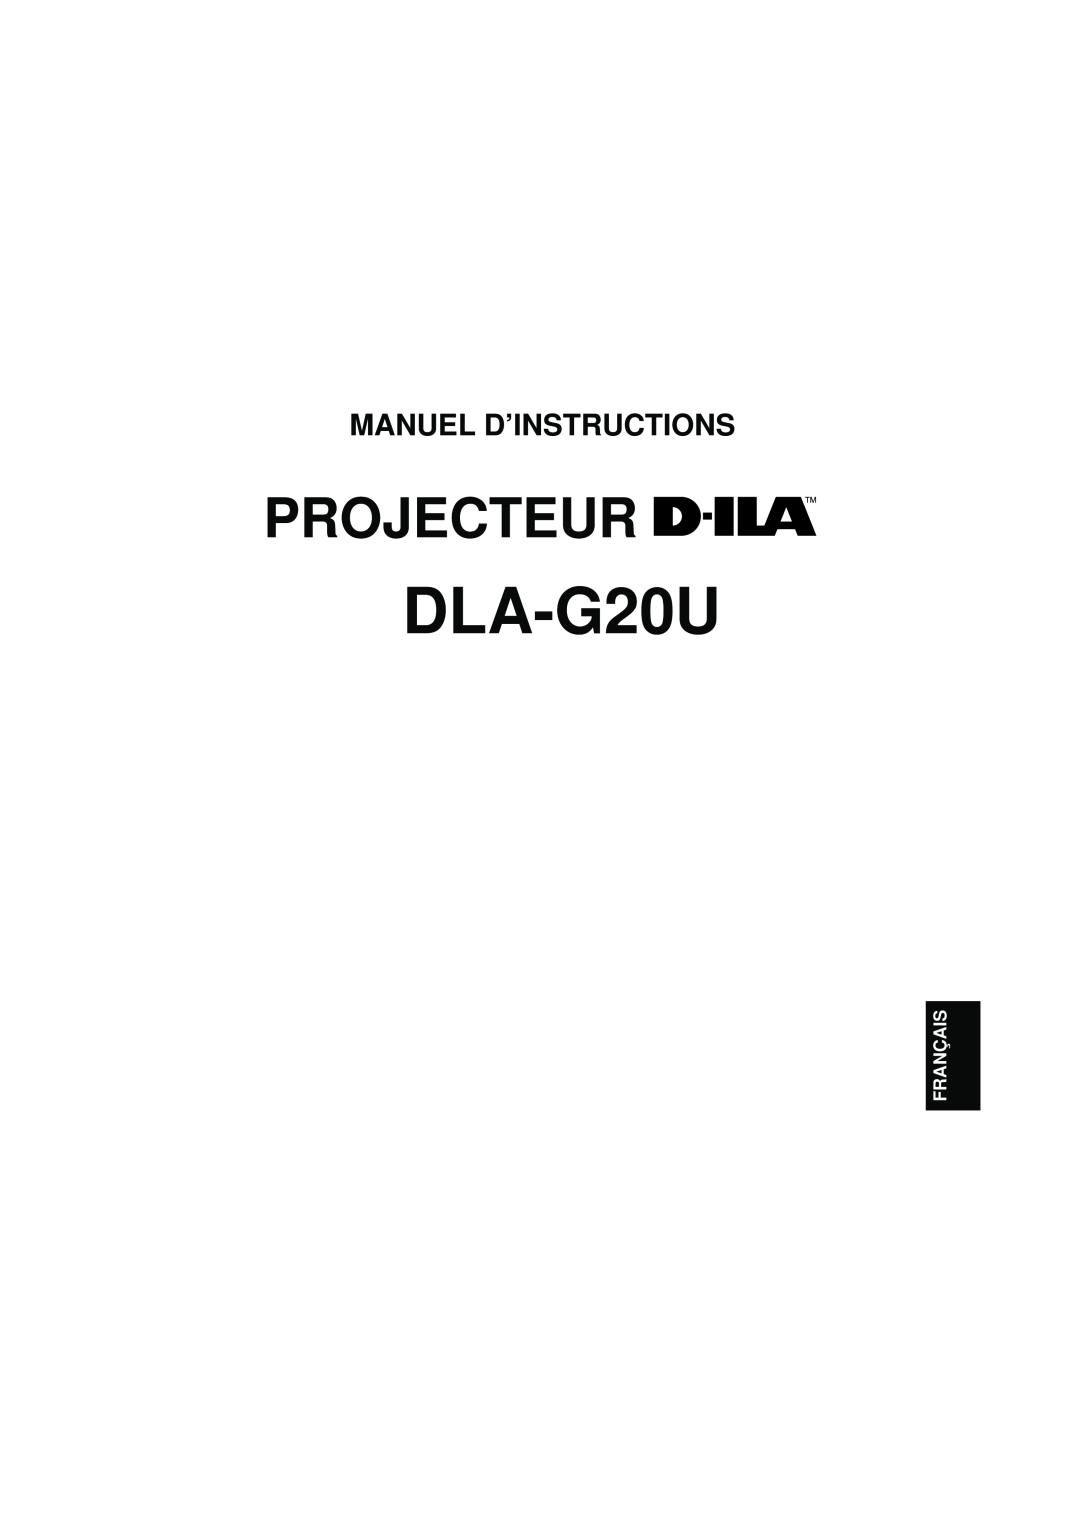 JVC DLA-G20U manual Projecteur, Manuel D’Instructions, Français 